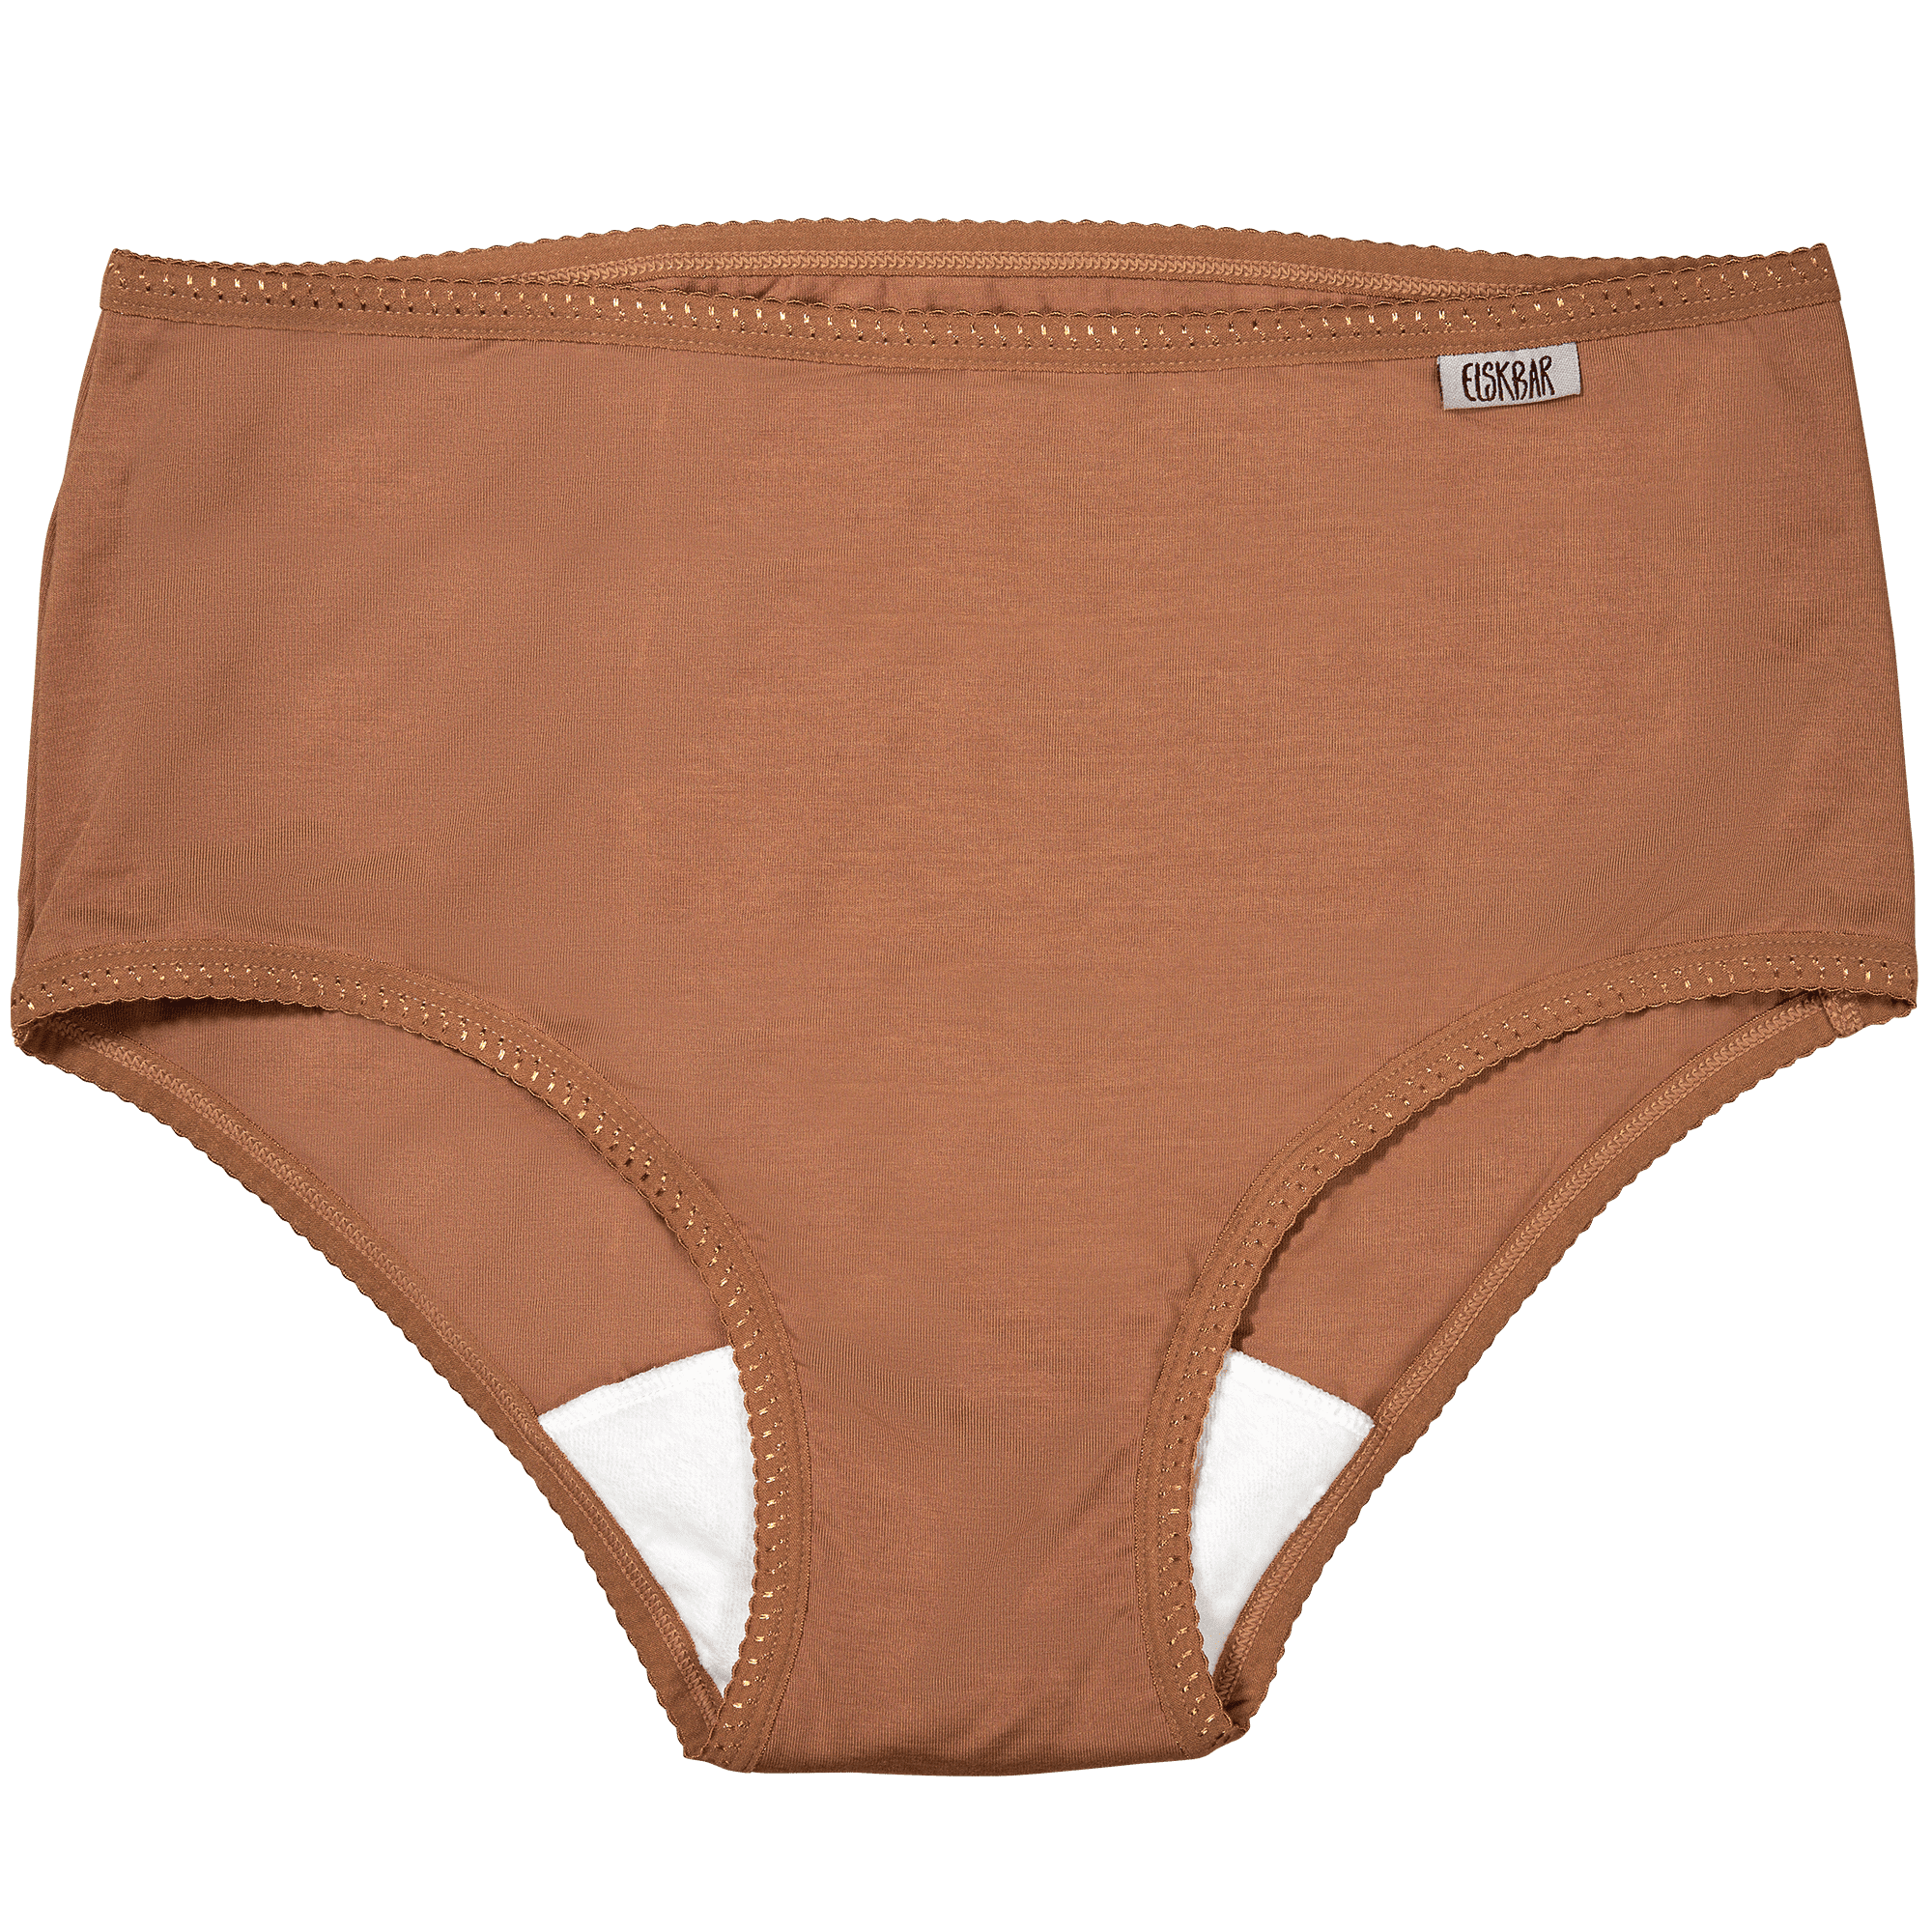 TENCEL Period Underwear